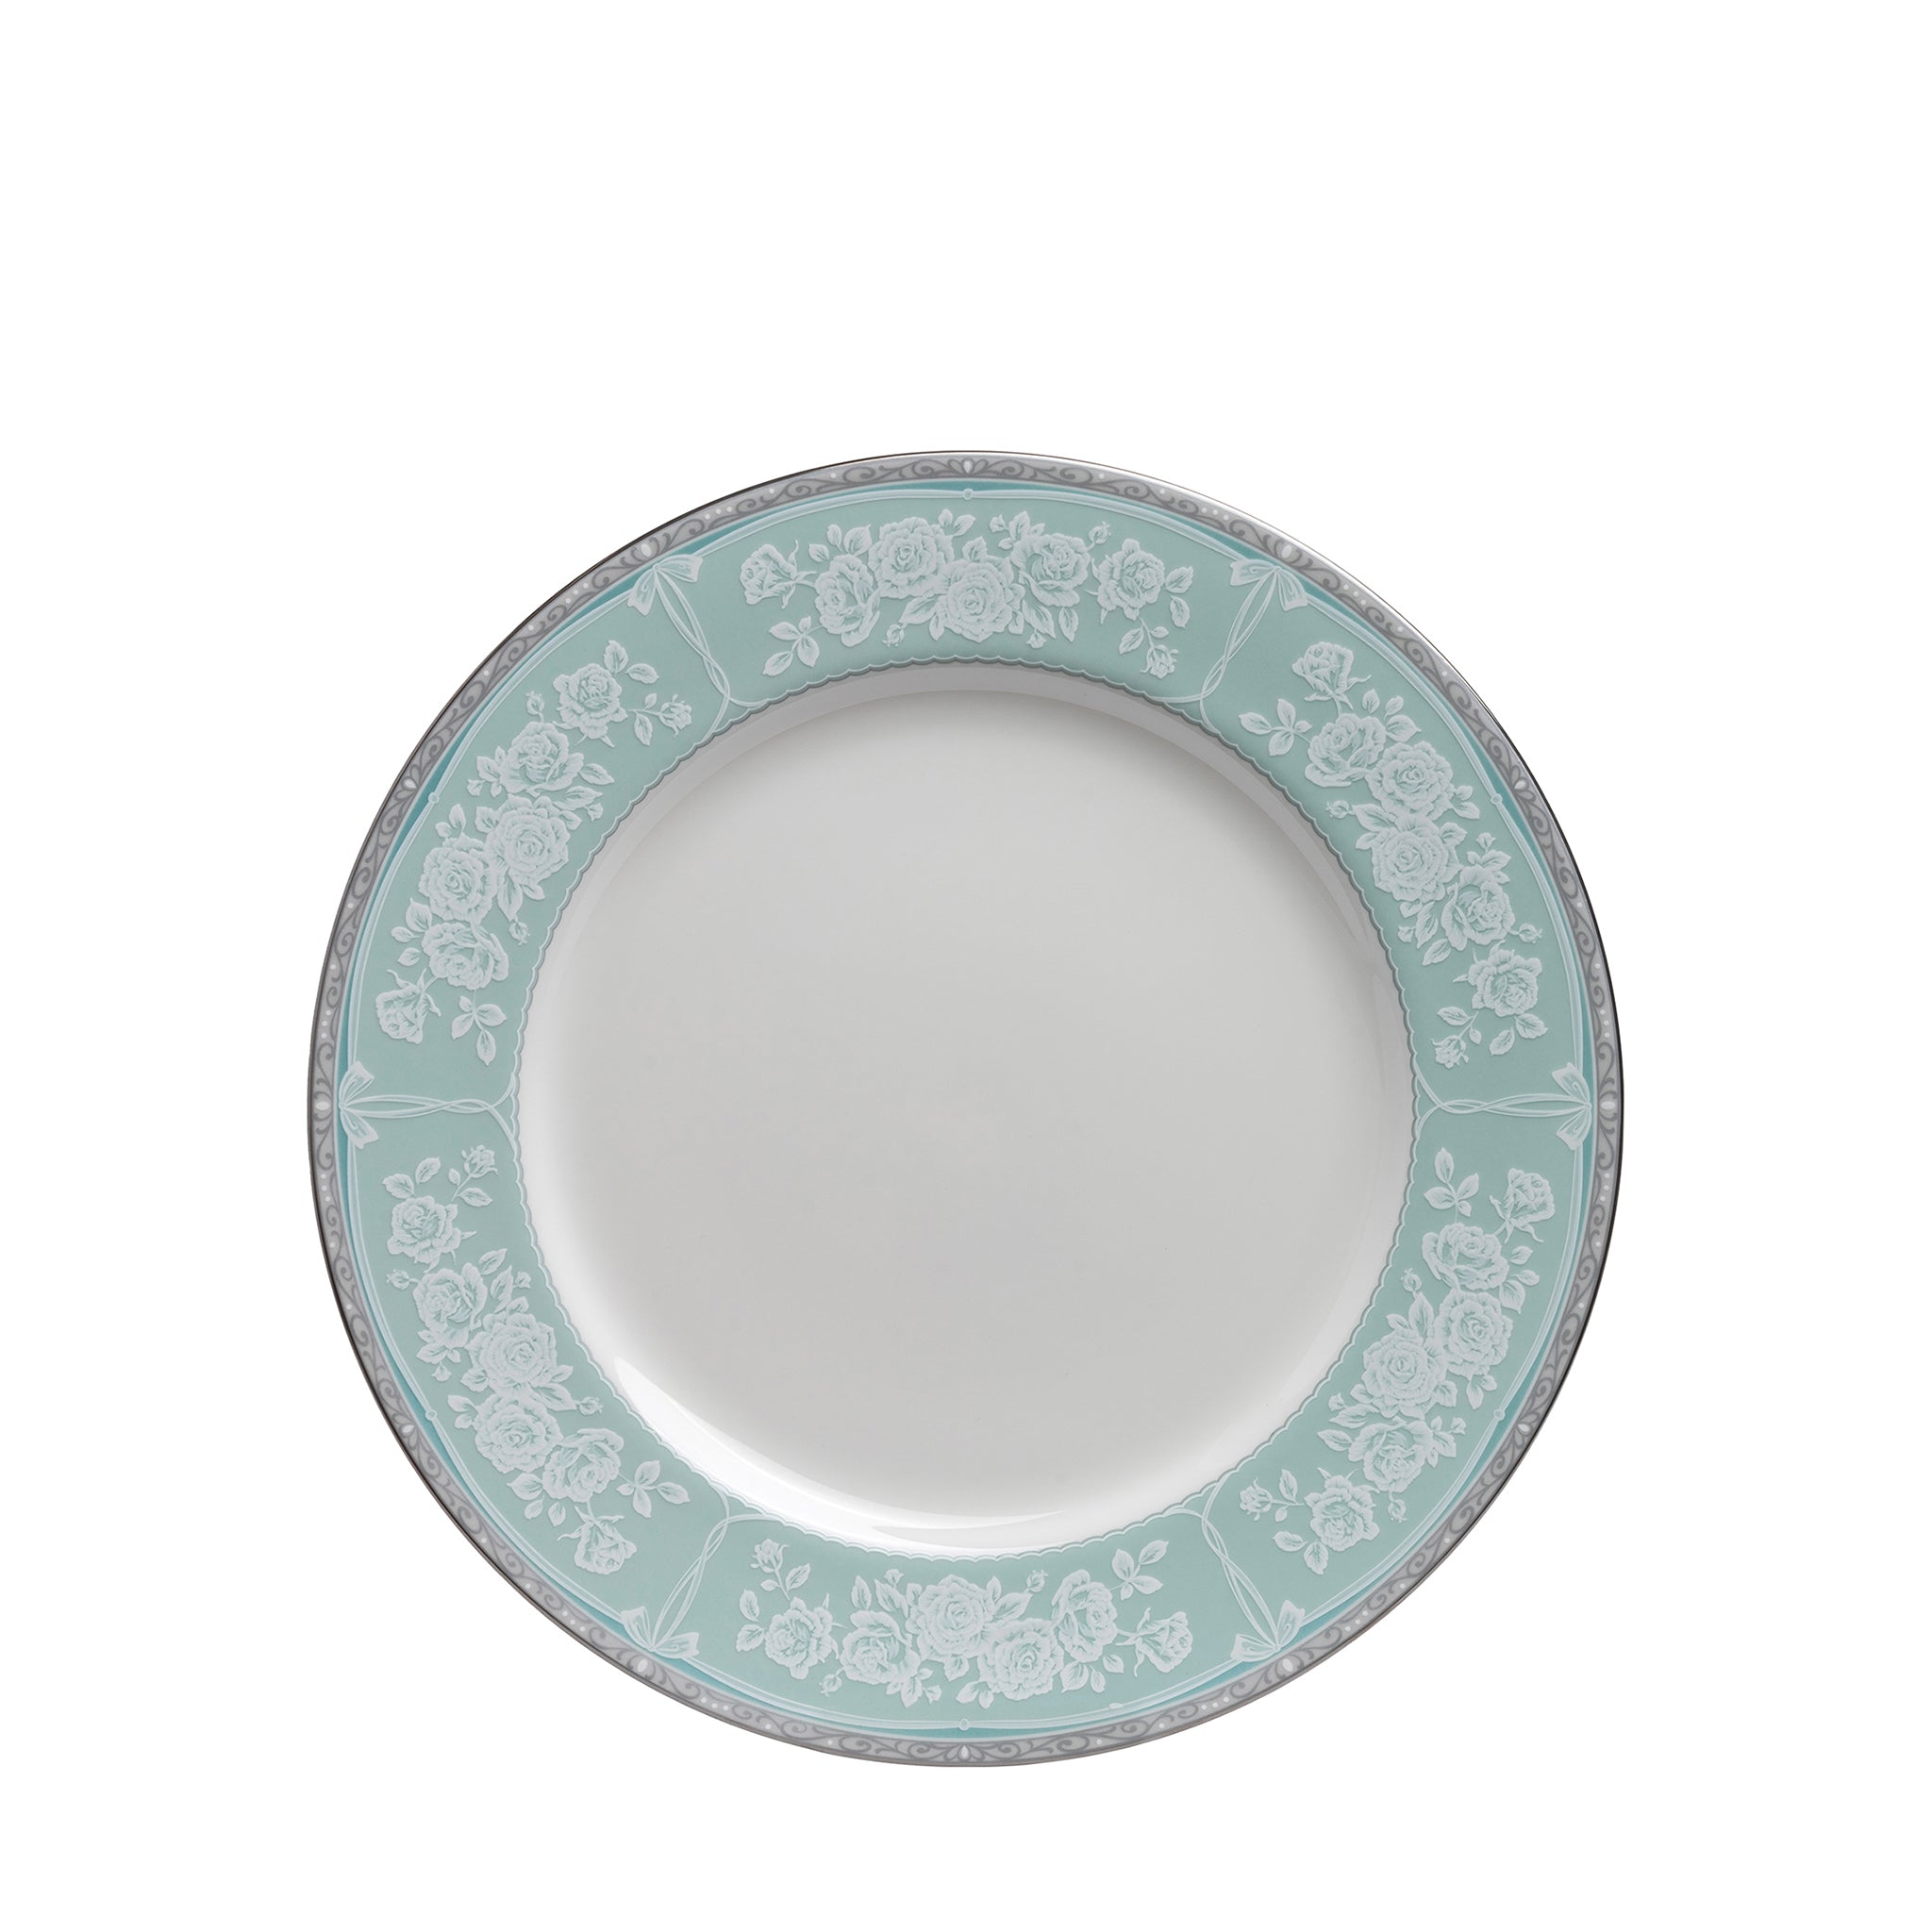 narumi graceair 16cm plate plates 